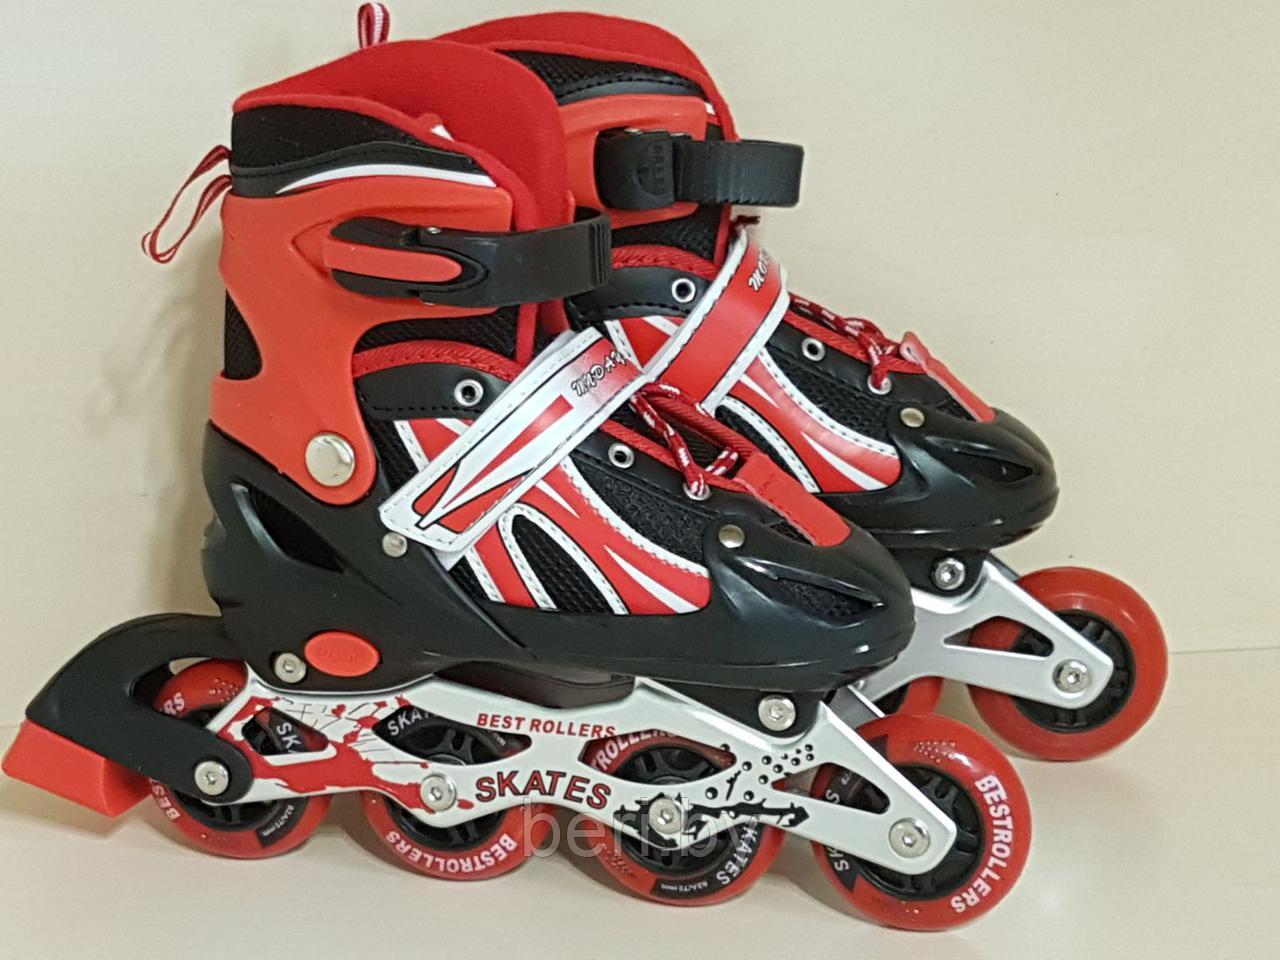 Ролики, роликовые коньки детские раздвижные M размер 34-37, полиуретановые колеса, красные, фото 1